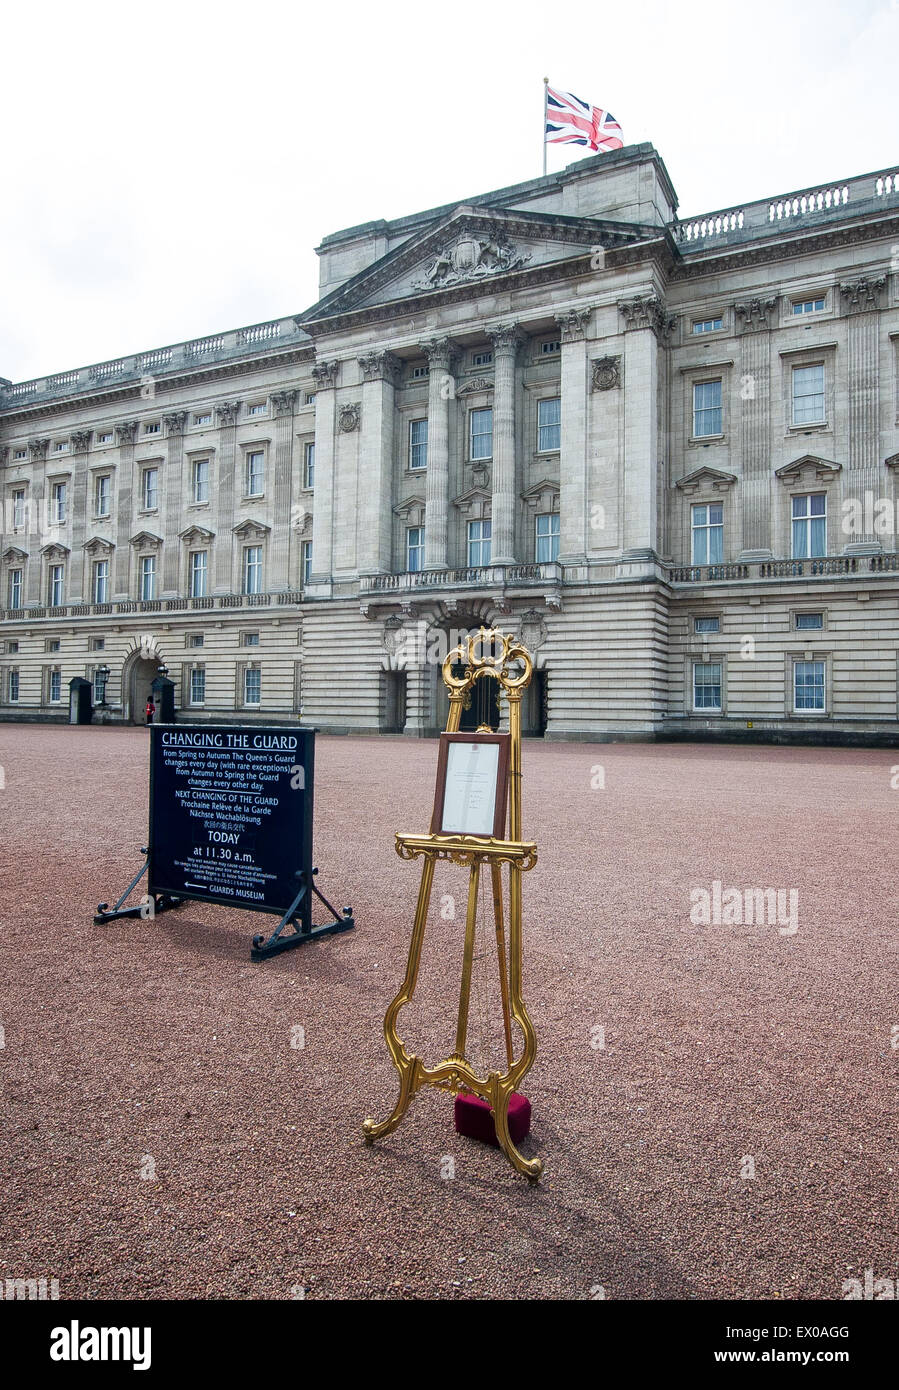 La naissance du duc et de la duchesse de Cambridge est une nouvelle fille est confirmé sur un chevalet à l'extérieur de Buckingham Palace. Doté d''atmosphère : où : London, Royaume-Uni Quand : 02 mai 2015 C Banque D'Images